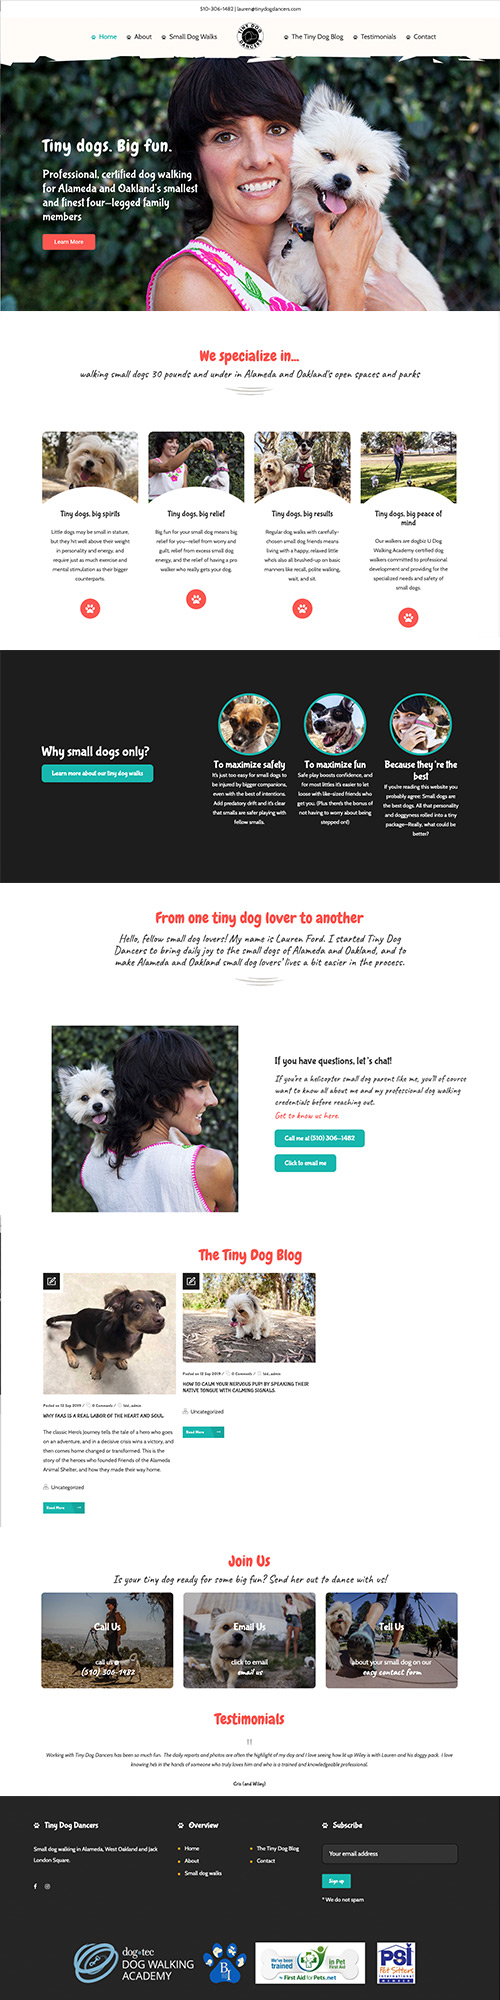 Dog walker website design